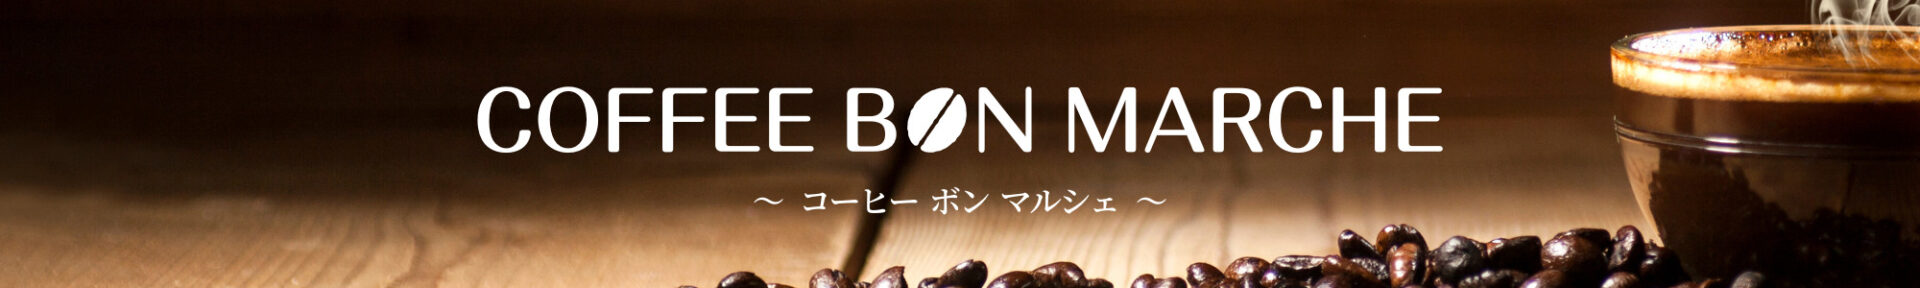 Coffee Bon Marche コーヒーボンマルシェ